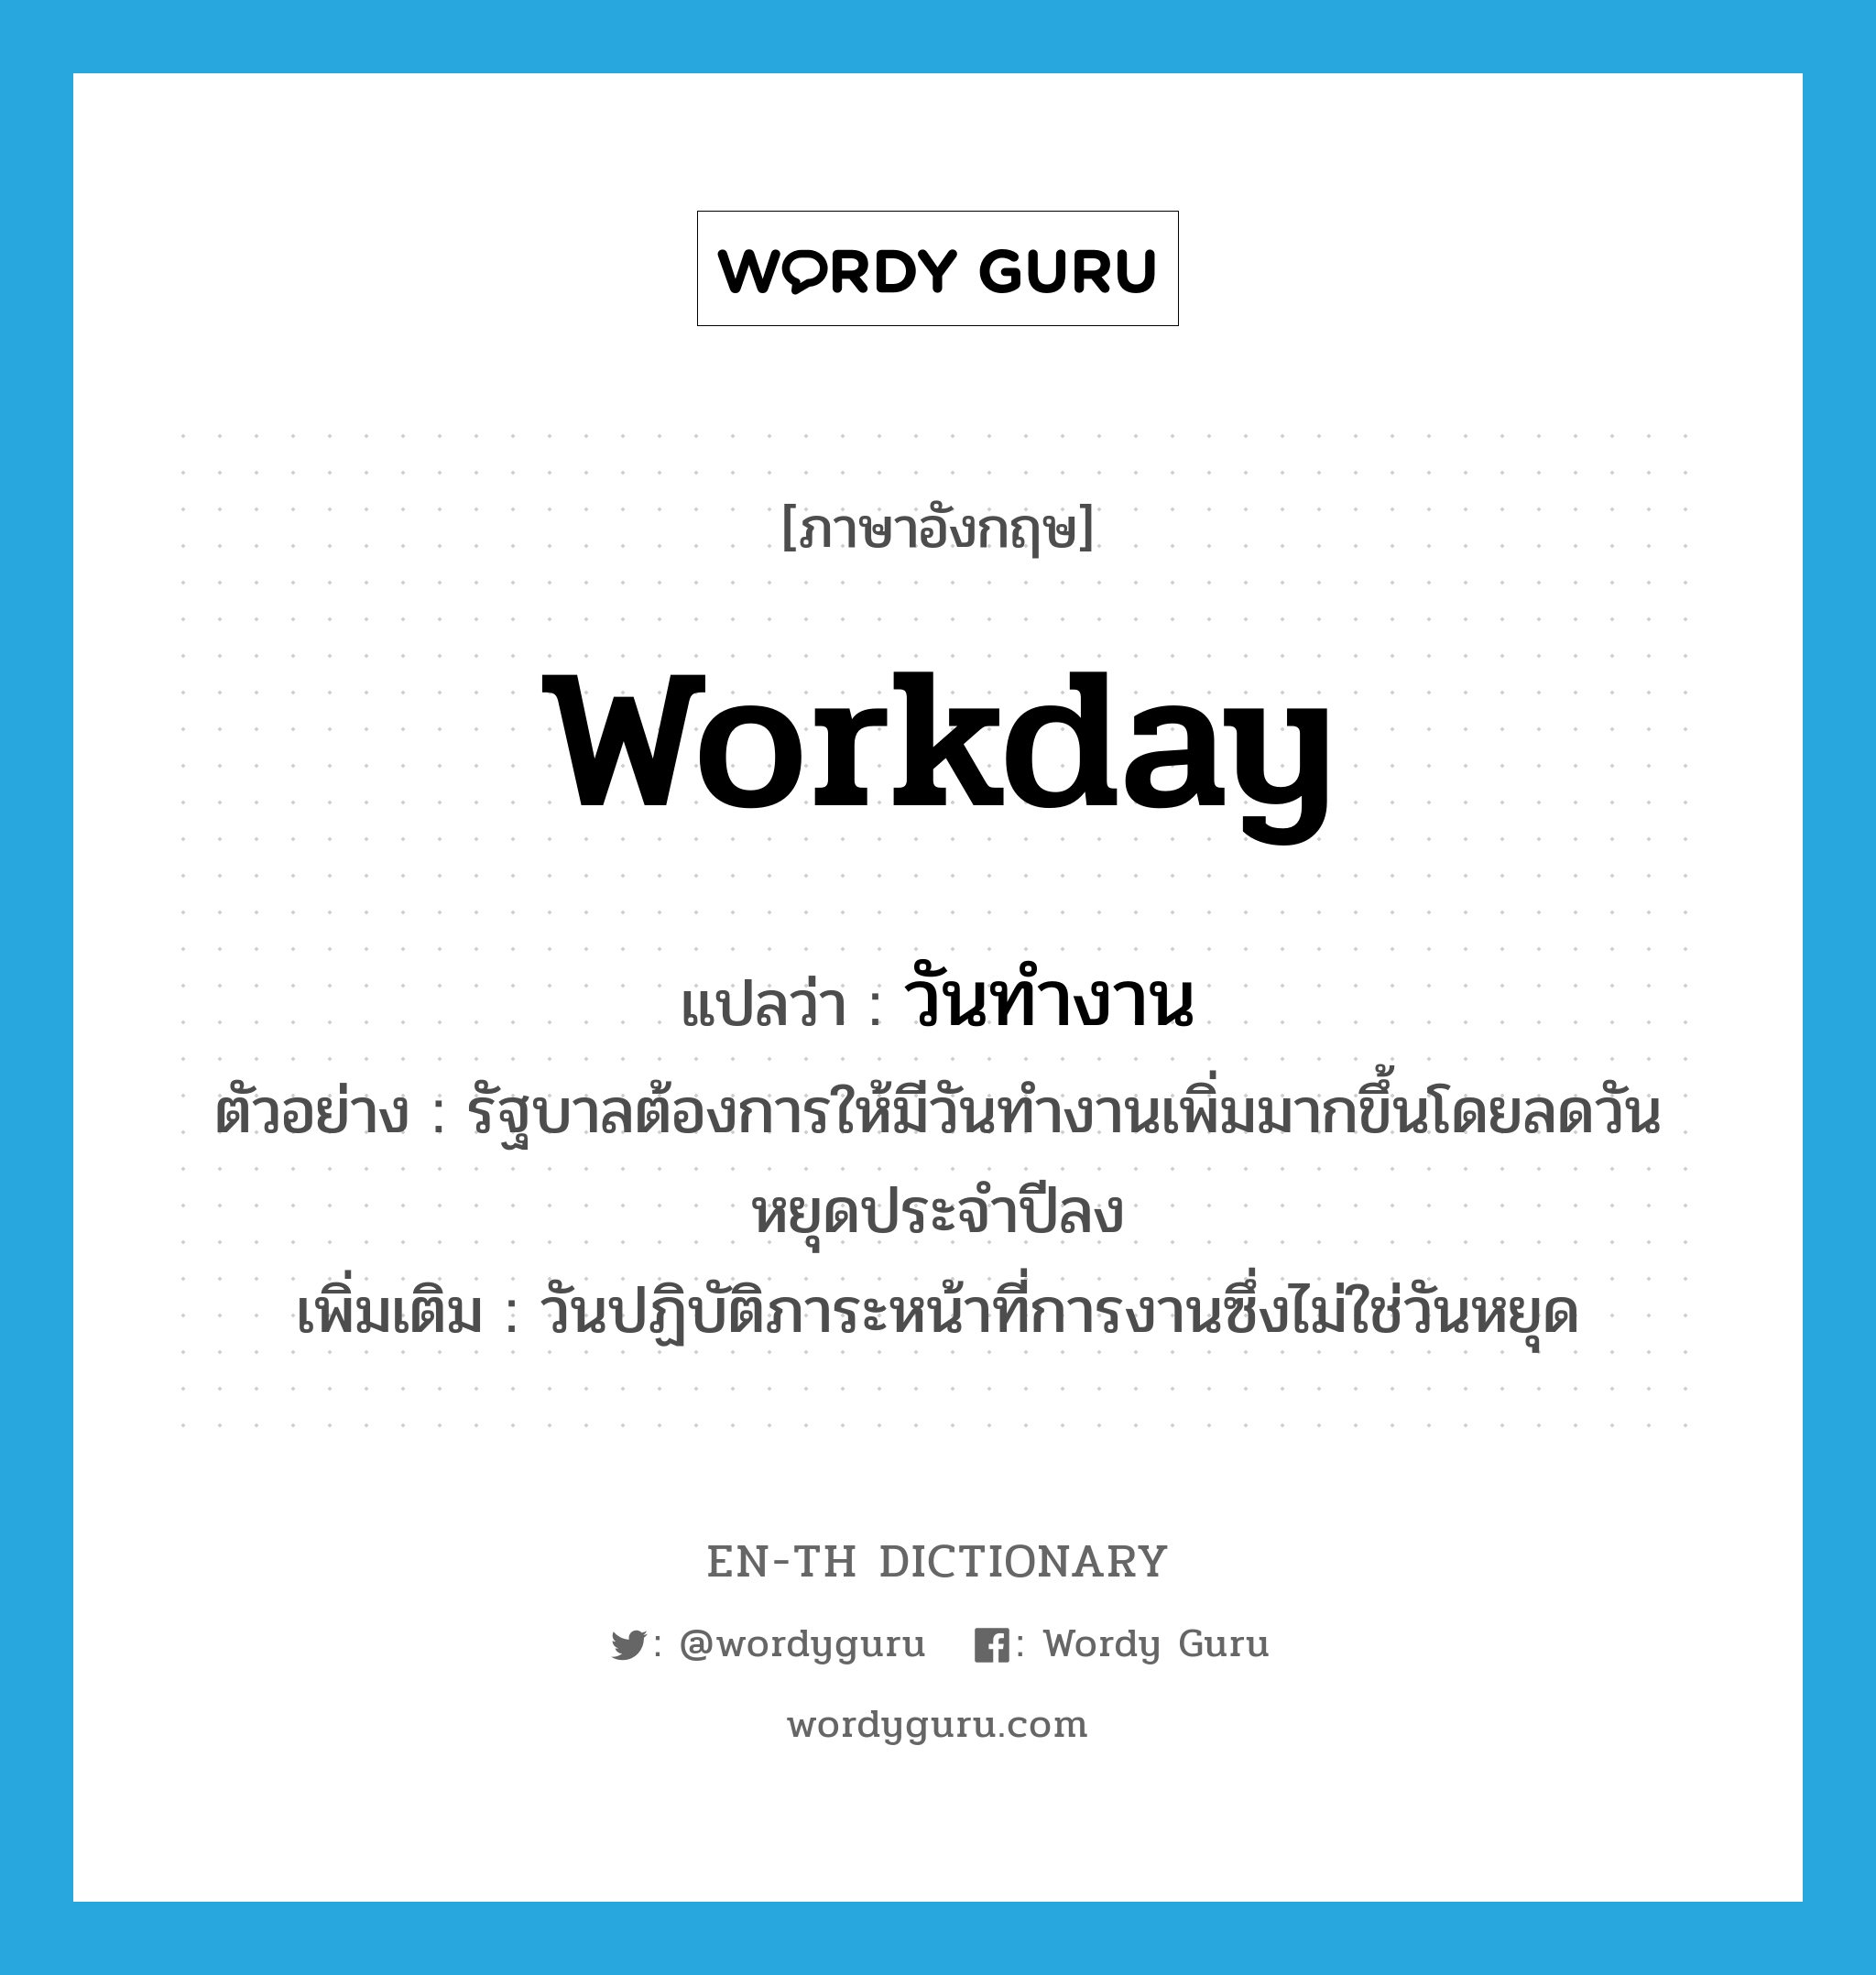 workday แปลว่า?, คำศัพท์ภาษาอังกฤษ workday แปลว่า วันทำงาน ประเภท N ตัวอย่าง รัฐบาลต้องการให้มีวันทำงานเพิ่มมากขึ้นโดยลดวันหยุดประจำปีลง เพิ่มเติม วันปฏิบัติภาระหน้าที่การงานซึ่งไม่ใช่วันหยุด หมวด N